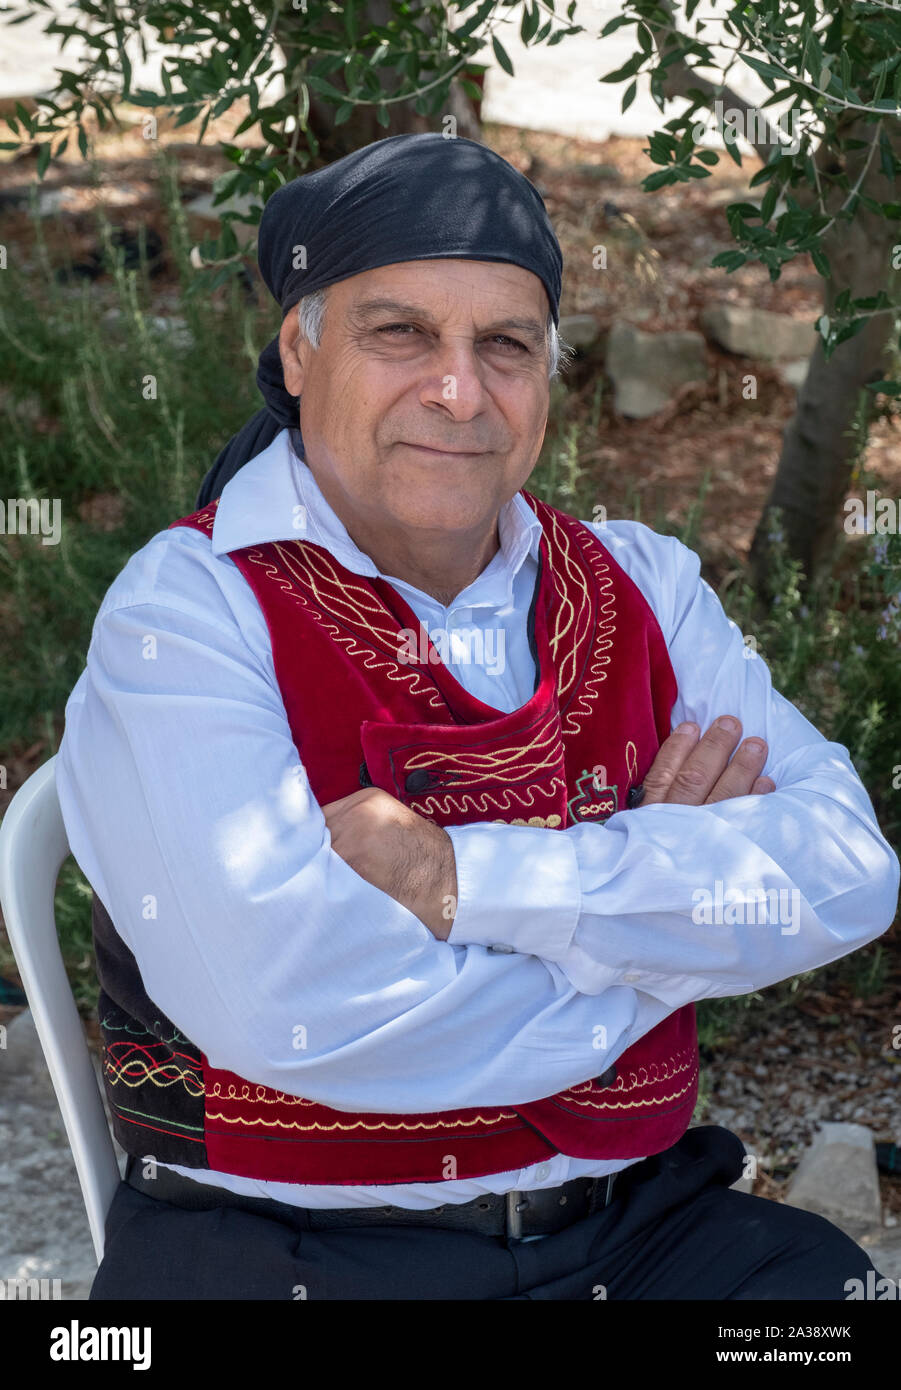 Porträt einer zypriotischen Mann in Tracht an der Oleastro Olive Festival, Anogyra, Zypern. Stockfoto